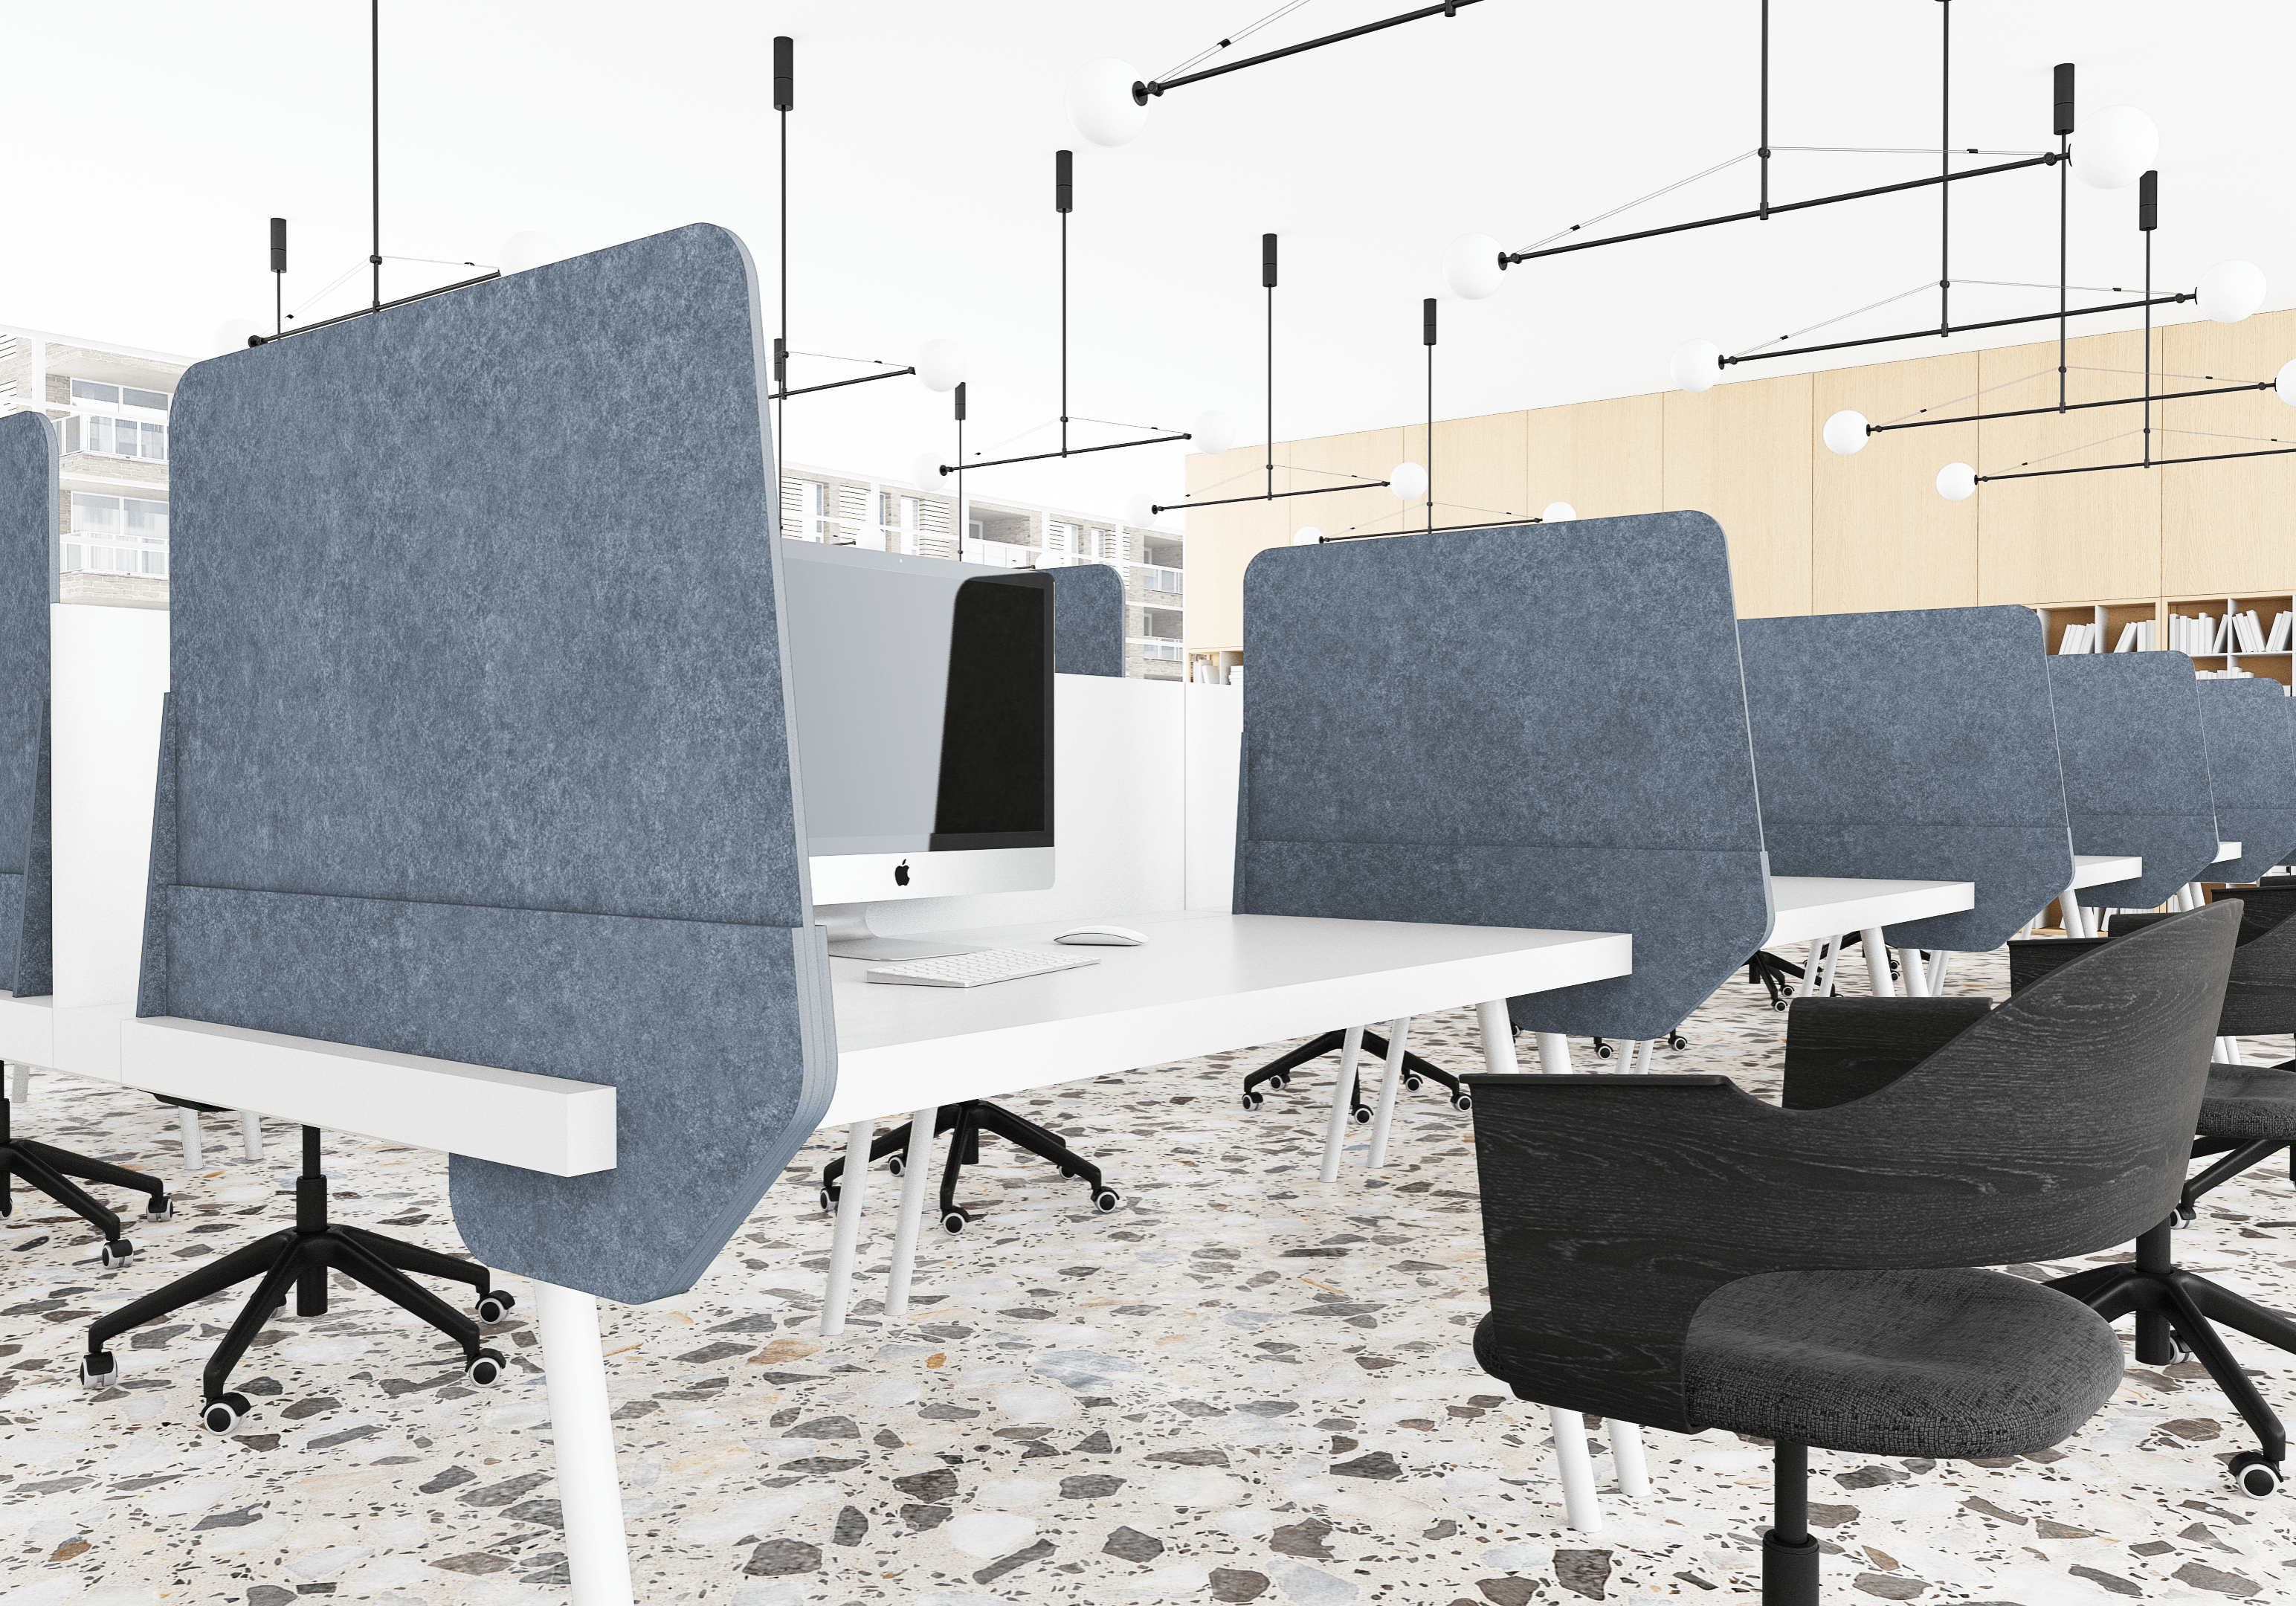 Intego Slide Pro installed in an open office